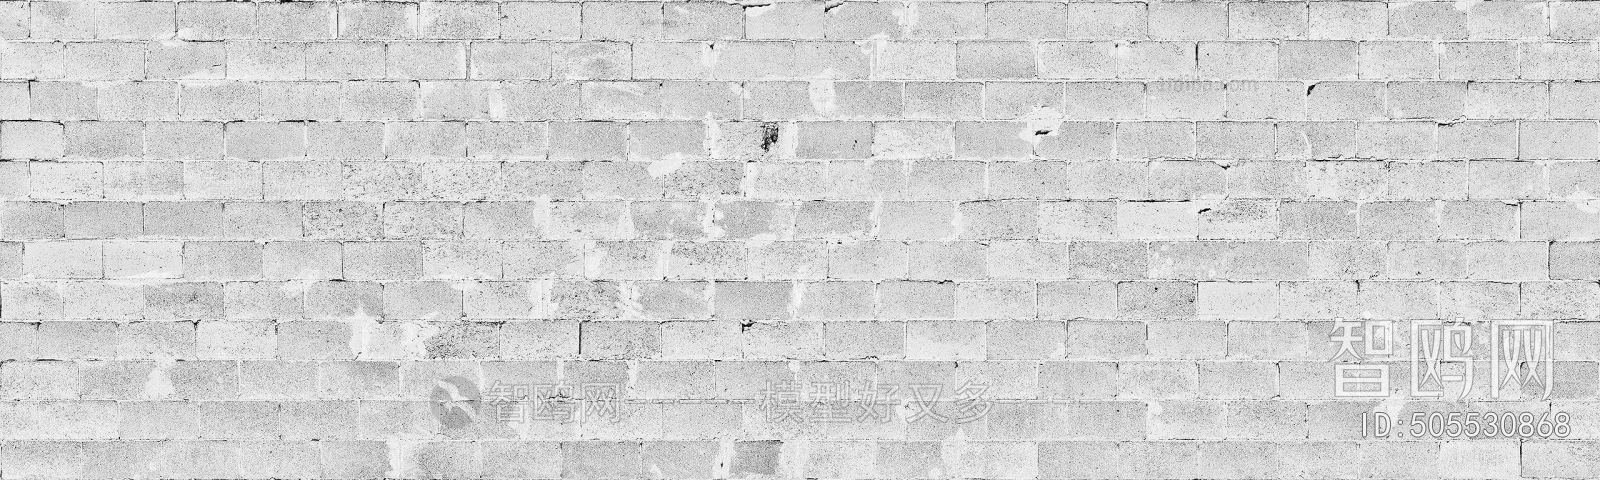 石材砖墙户外地砖